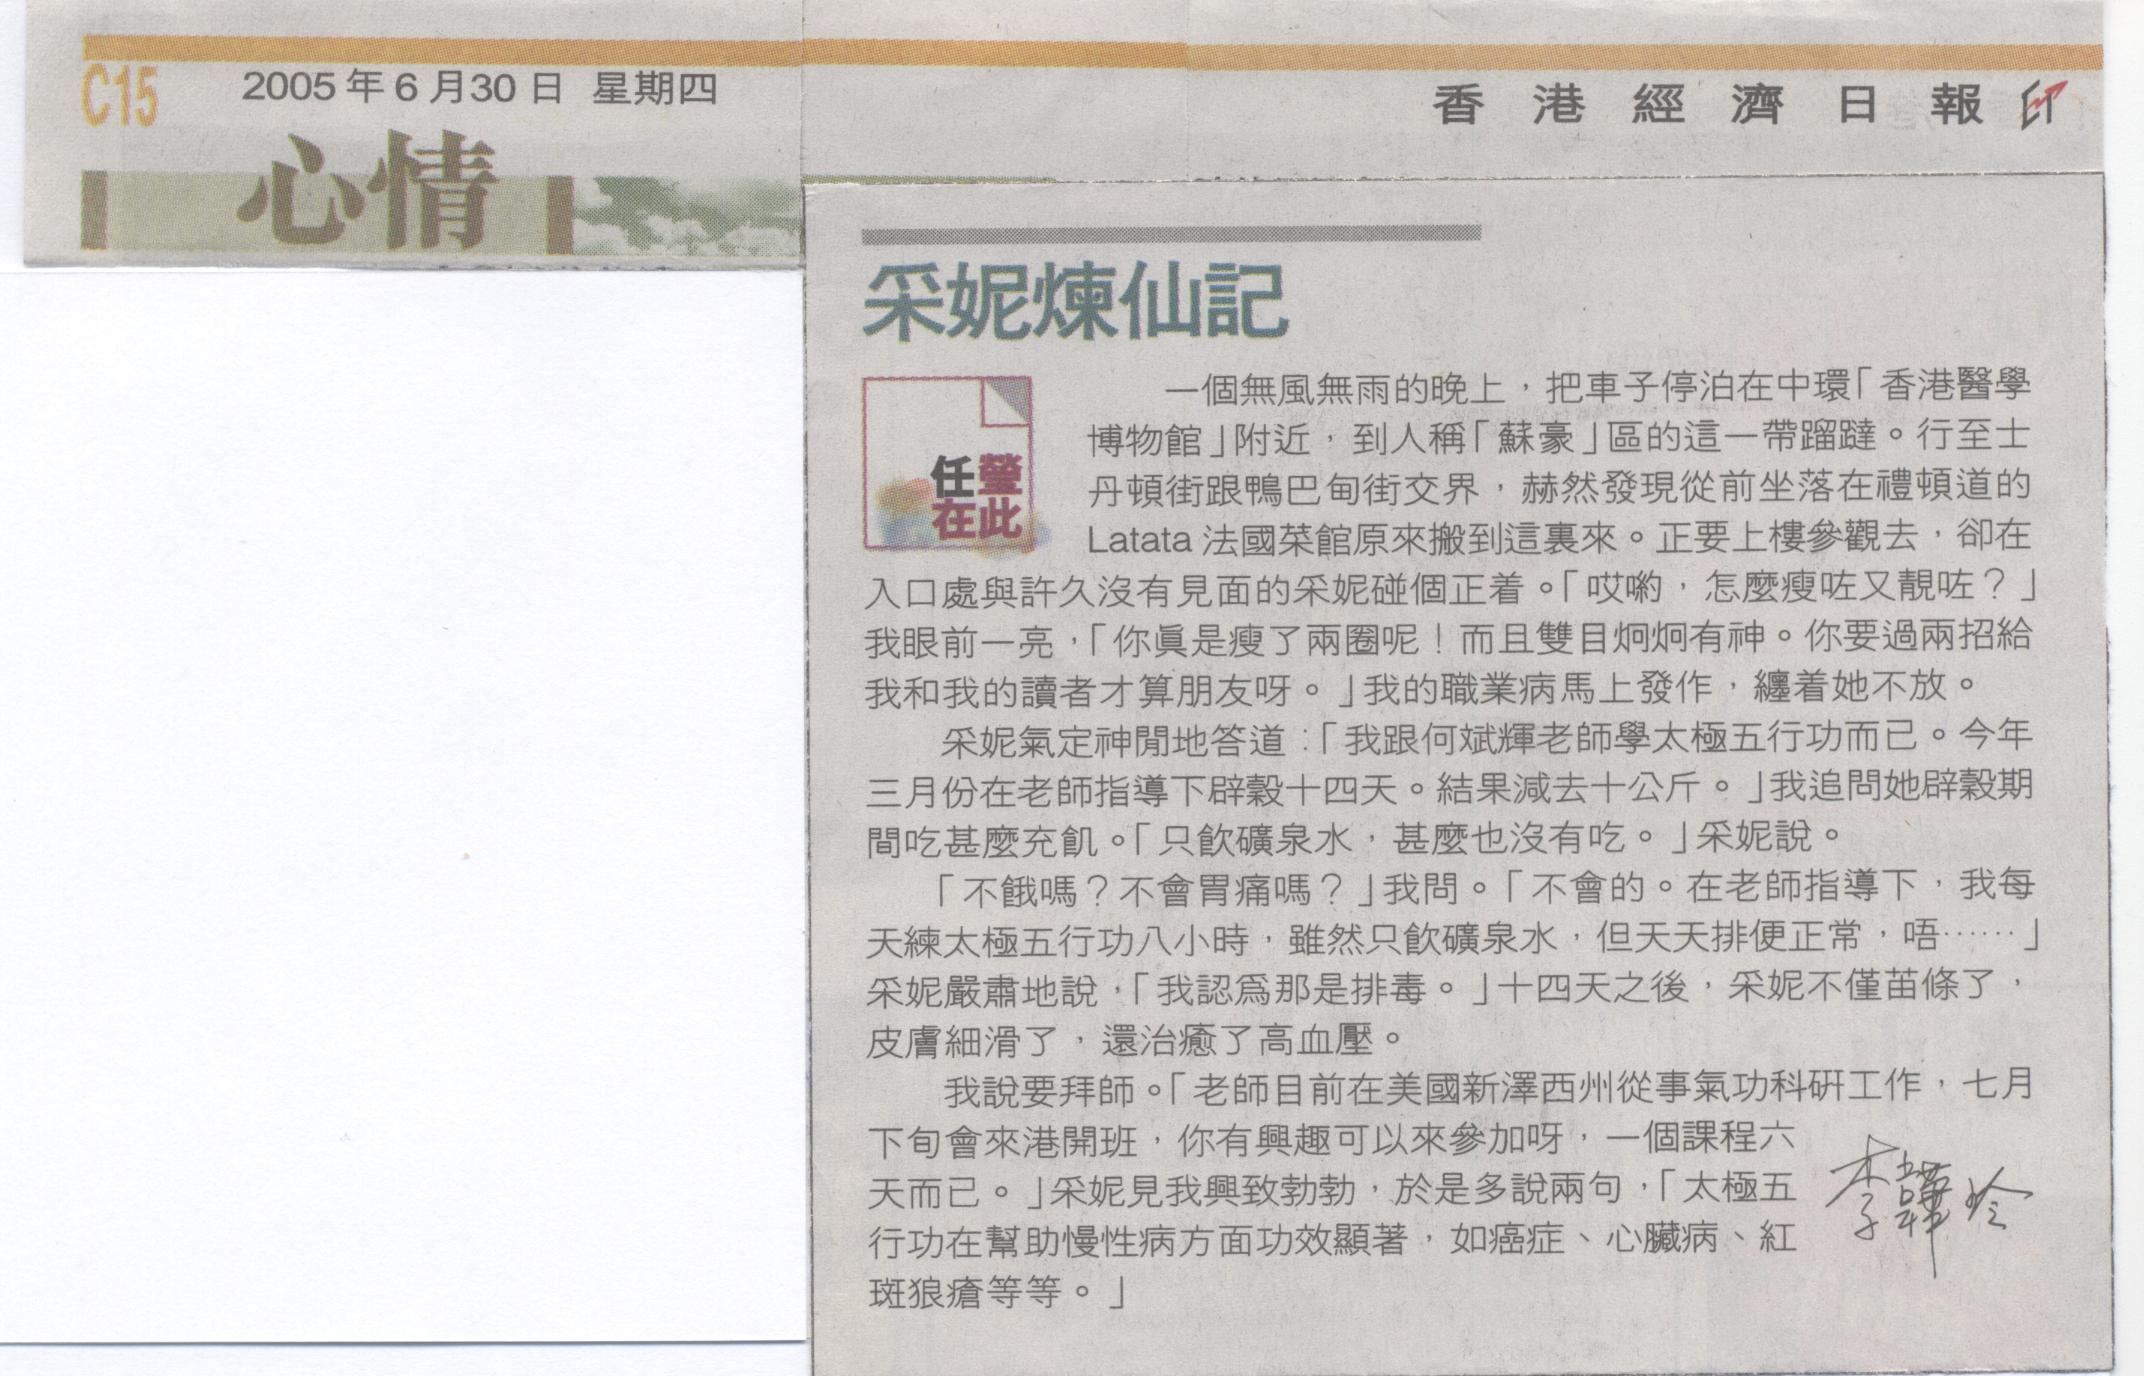 香港經濟日報︰2005年6月30日 (采妮煉仙記)